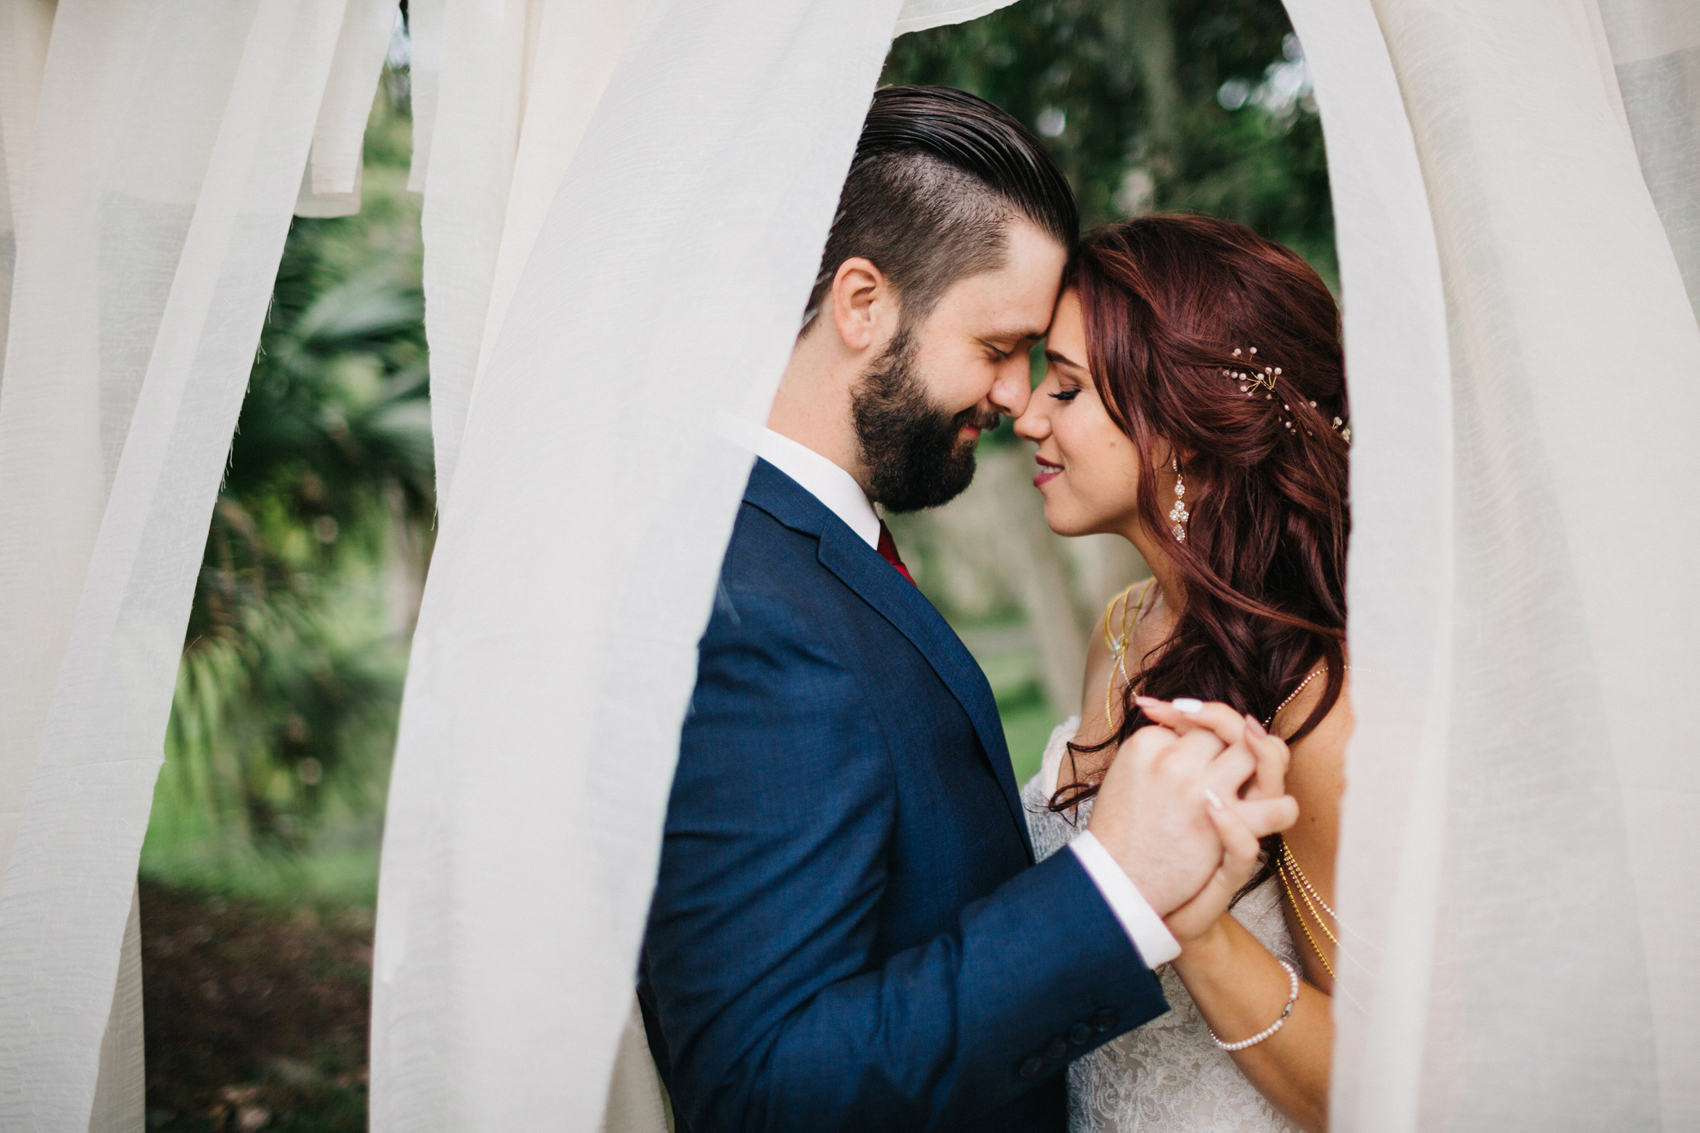 Romantic boho wedding photos in Orlando Florida at the Winter Park Farmers Market